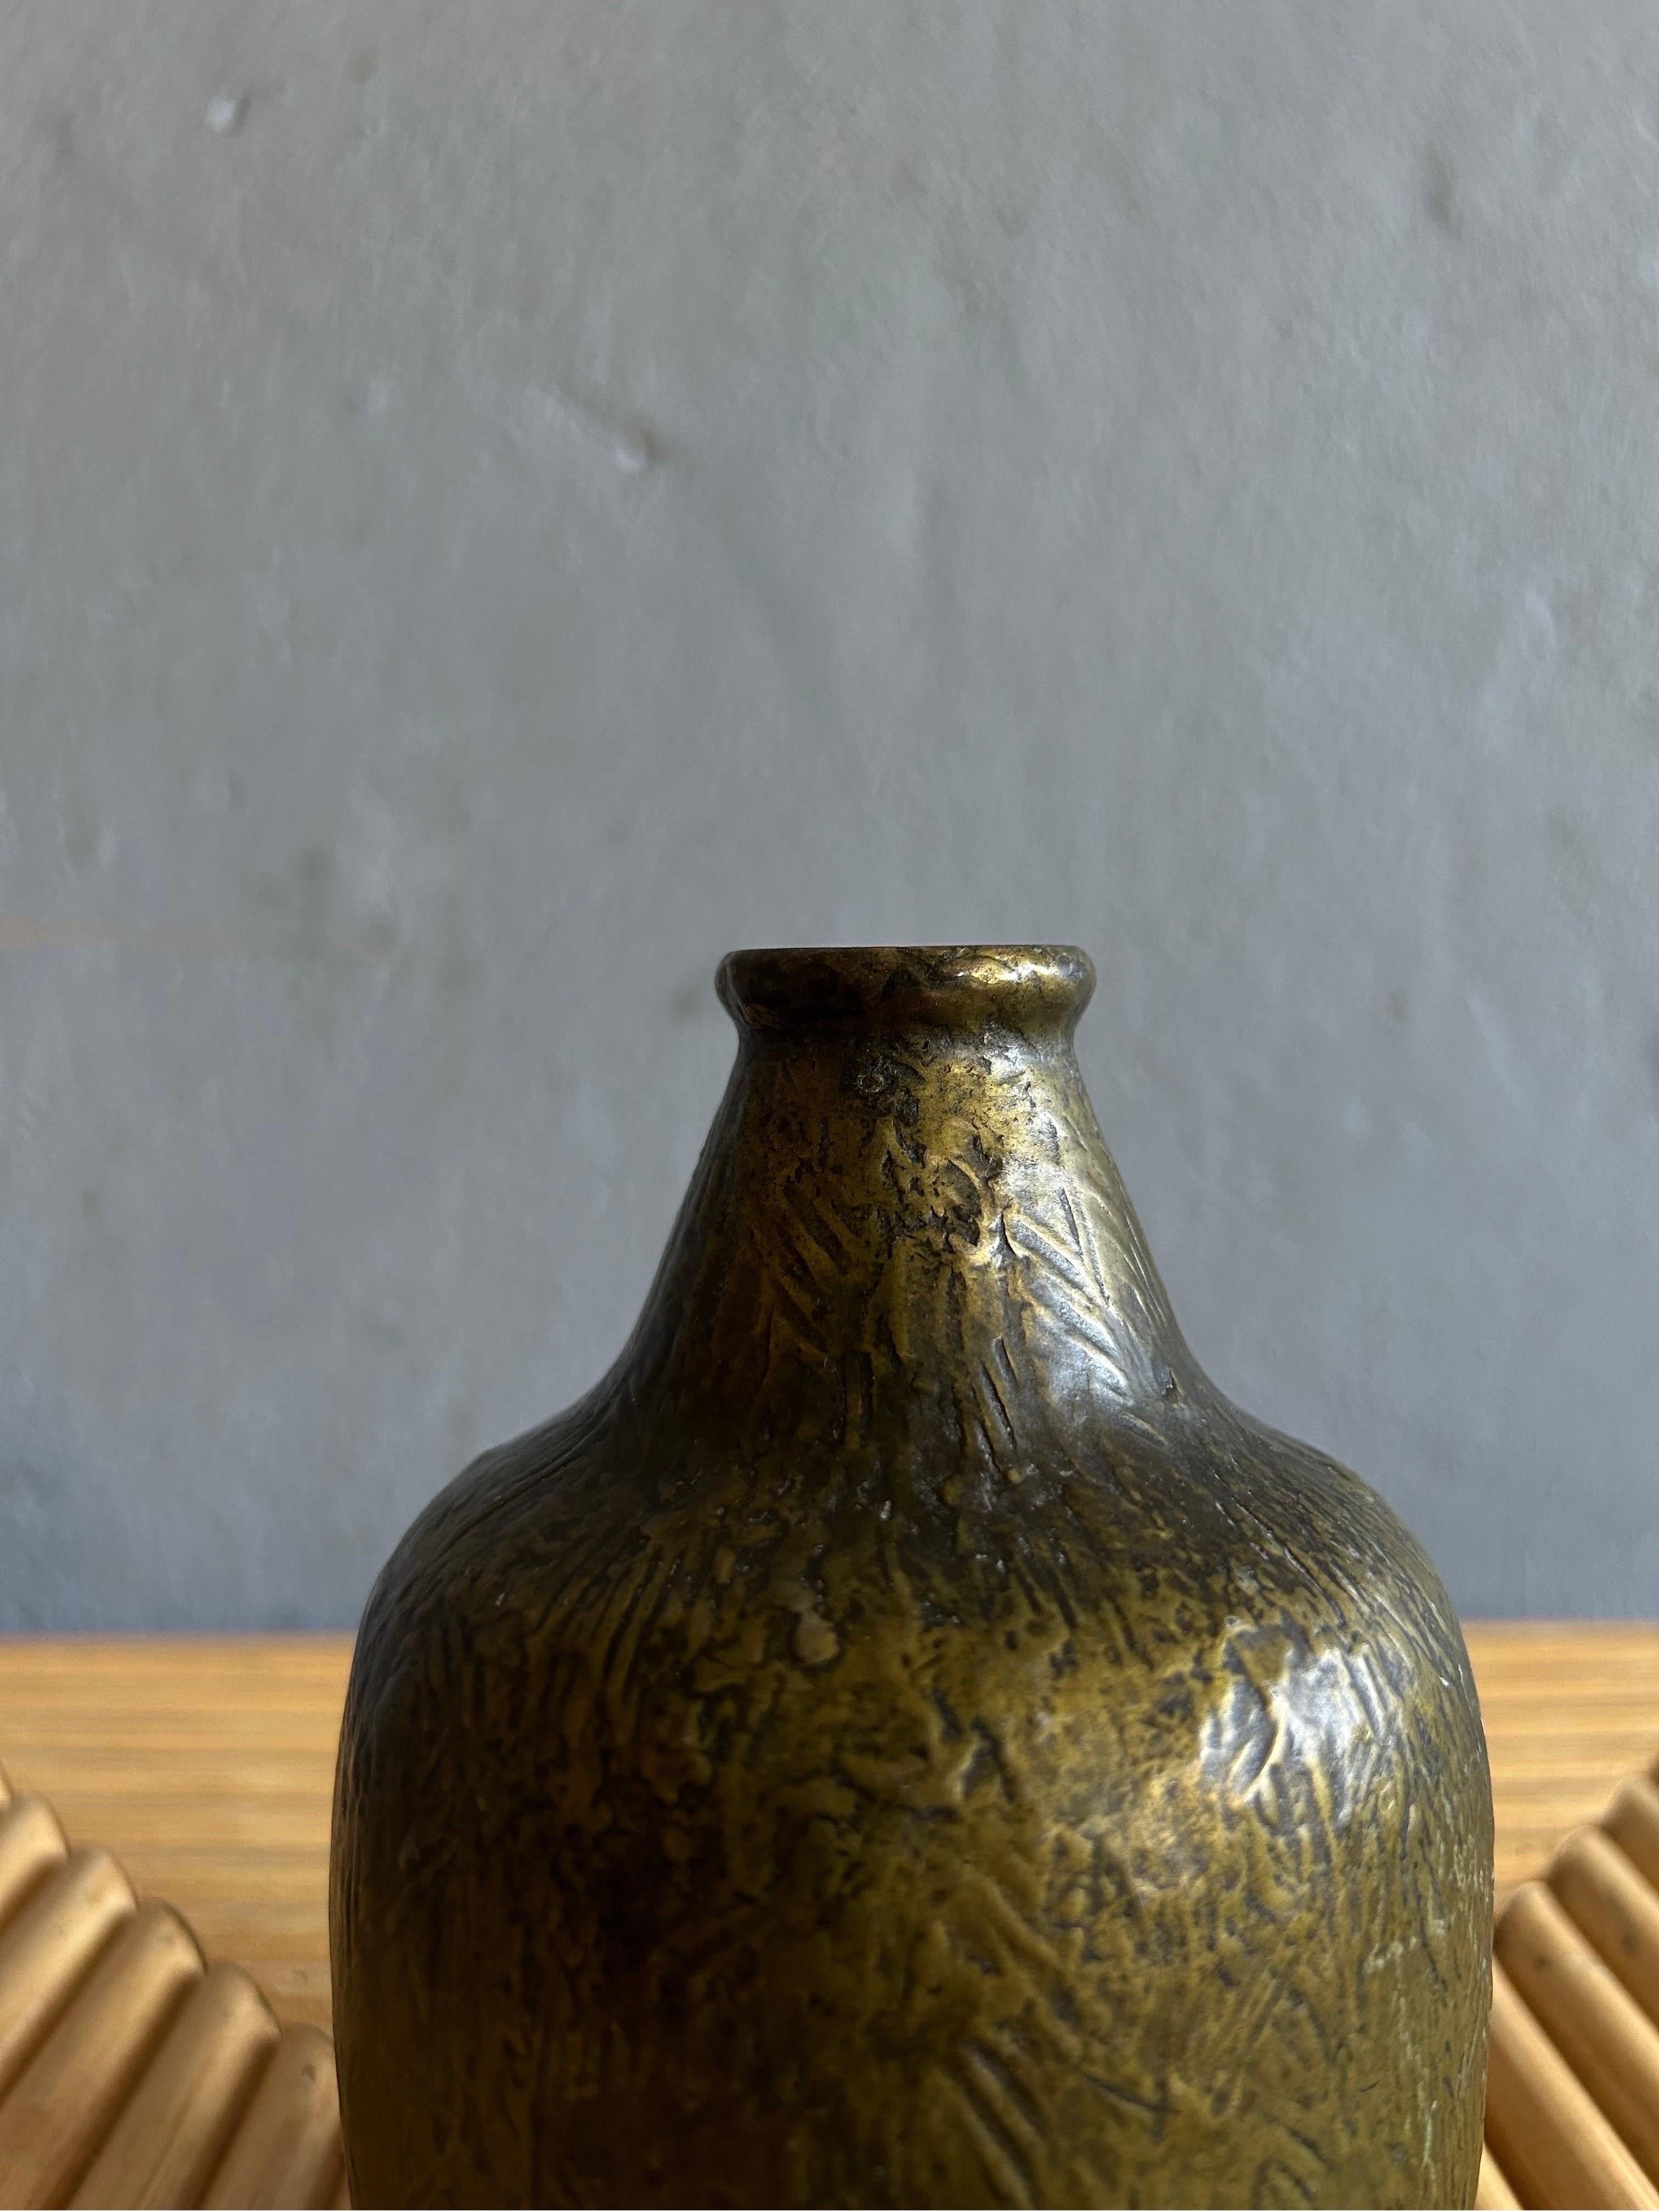 Rare vase en bronze attribué à Evan Jensen et fabriqué au Danemark dans les années 1930.
Le vase a été fabriqué par un fondeur danois inconnu appelé Antika, mais il a une forme et des détails typiques d'Evan Jensen.

Le vase est en bon état et